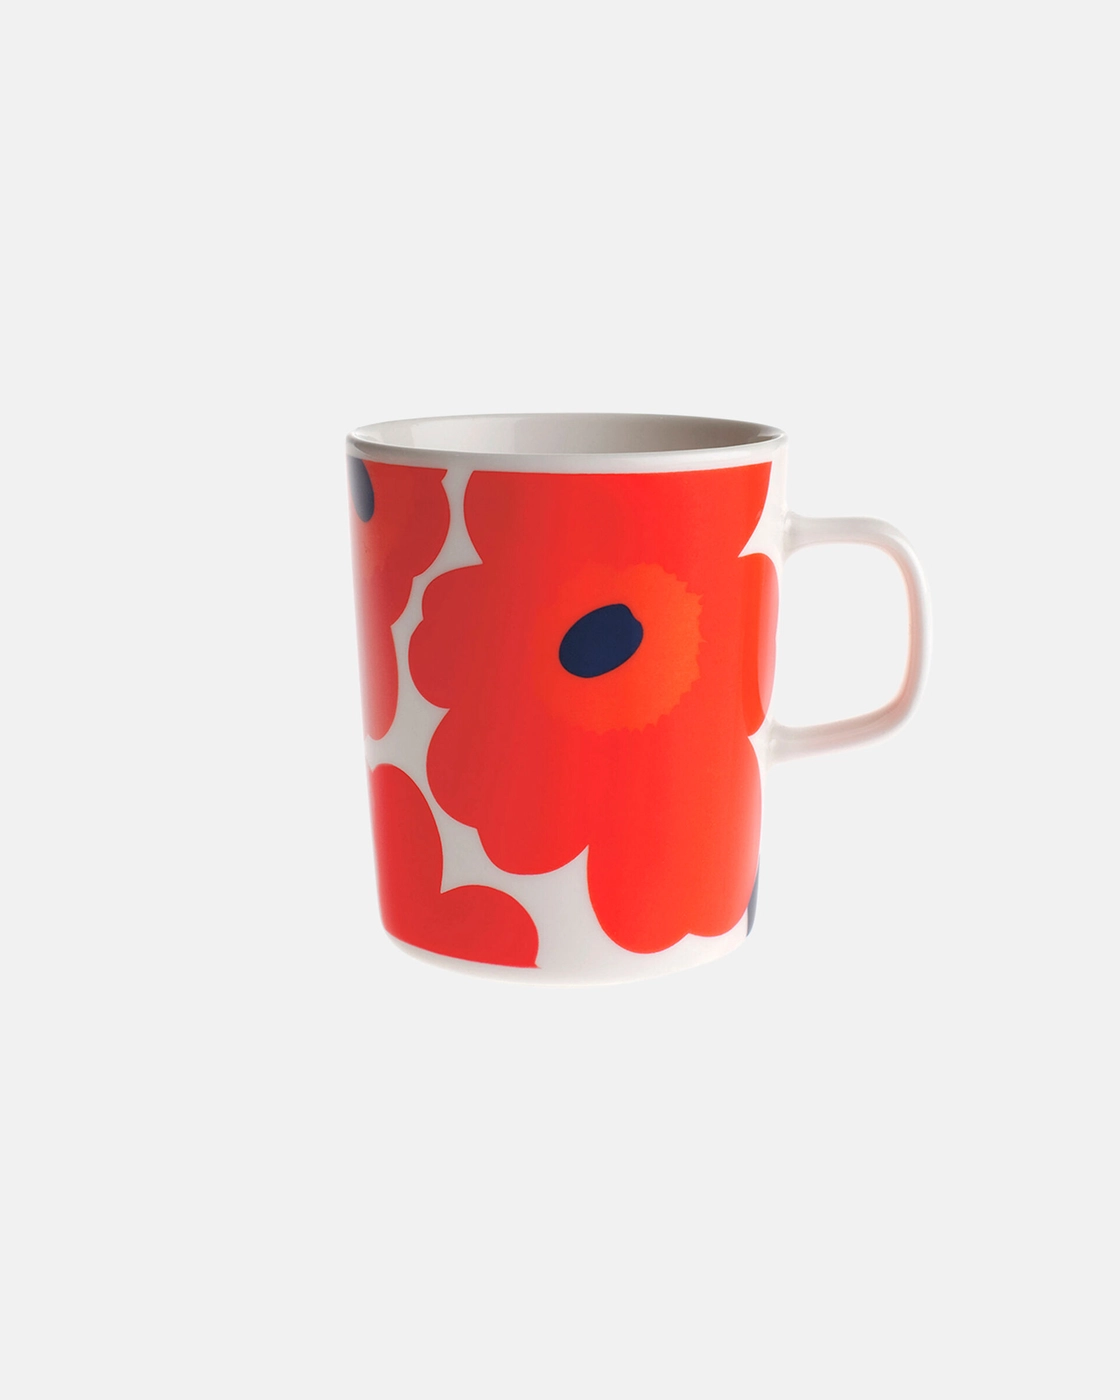 Mug / Tasse Oiva Unikko fleurs rouges 2,5dl * Marimekko